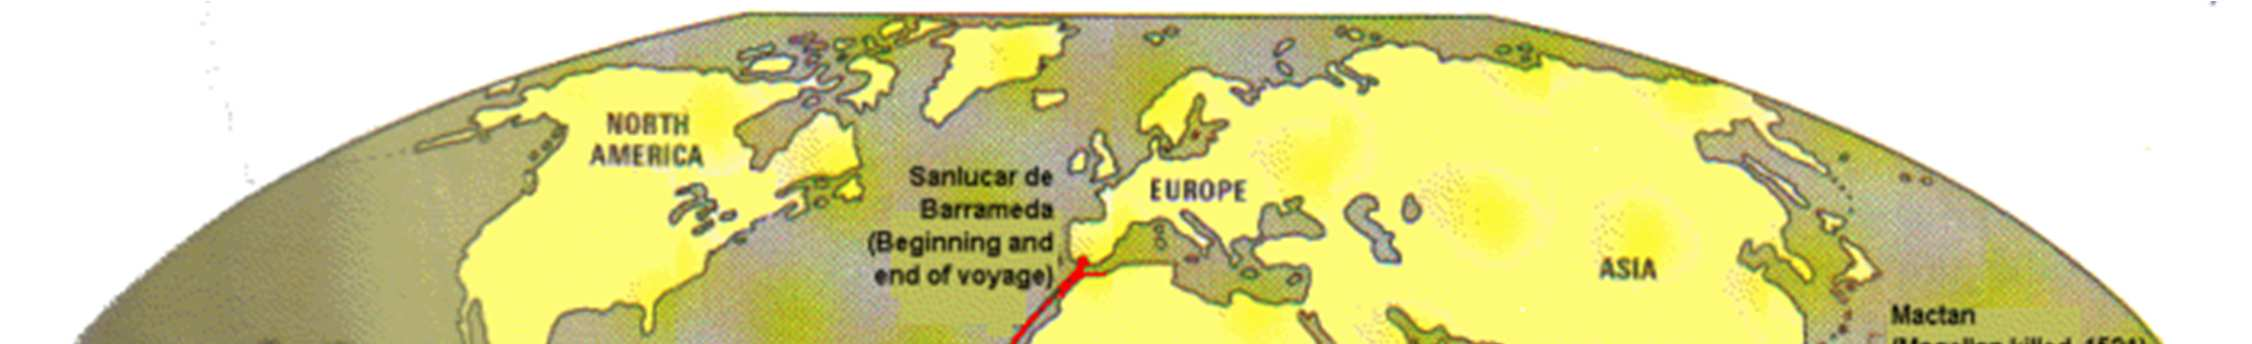 Φερδινάνδος Μαγγελάνος (Fernando de Magallanes, 1480-1521) Ο Πορτογάλος θαλασσοπόρος Φερδινάνδος Μαγγελάνος έµεινε στην ιστορία ως ο πρώτος Ευρωπαίος που «παρέκαµψε» τη Νότια Αµερική και διέσχισε τον